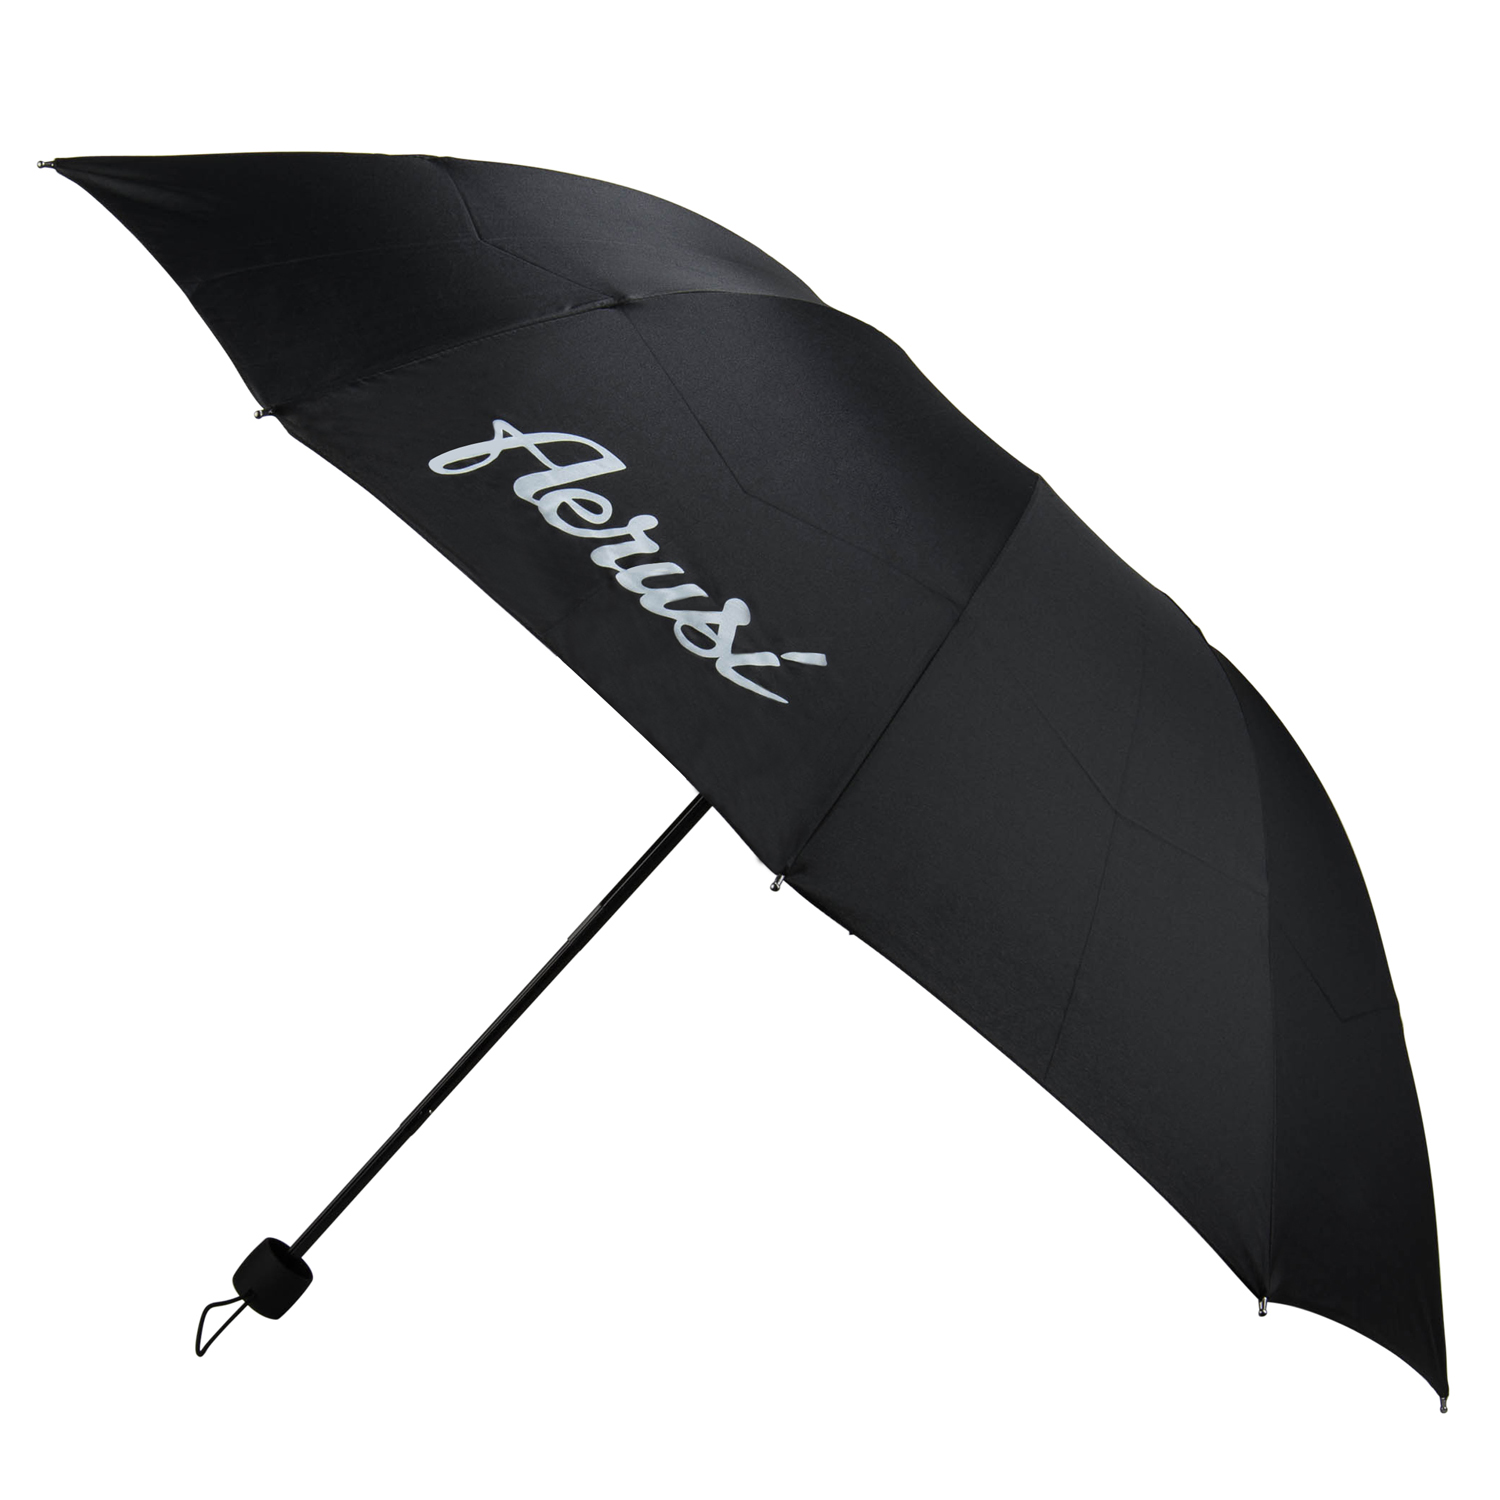 Aerusi Classic Black Umbrella - umbrella - umbrella